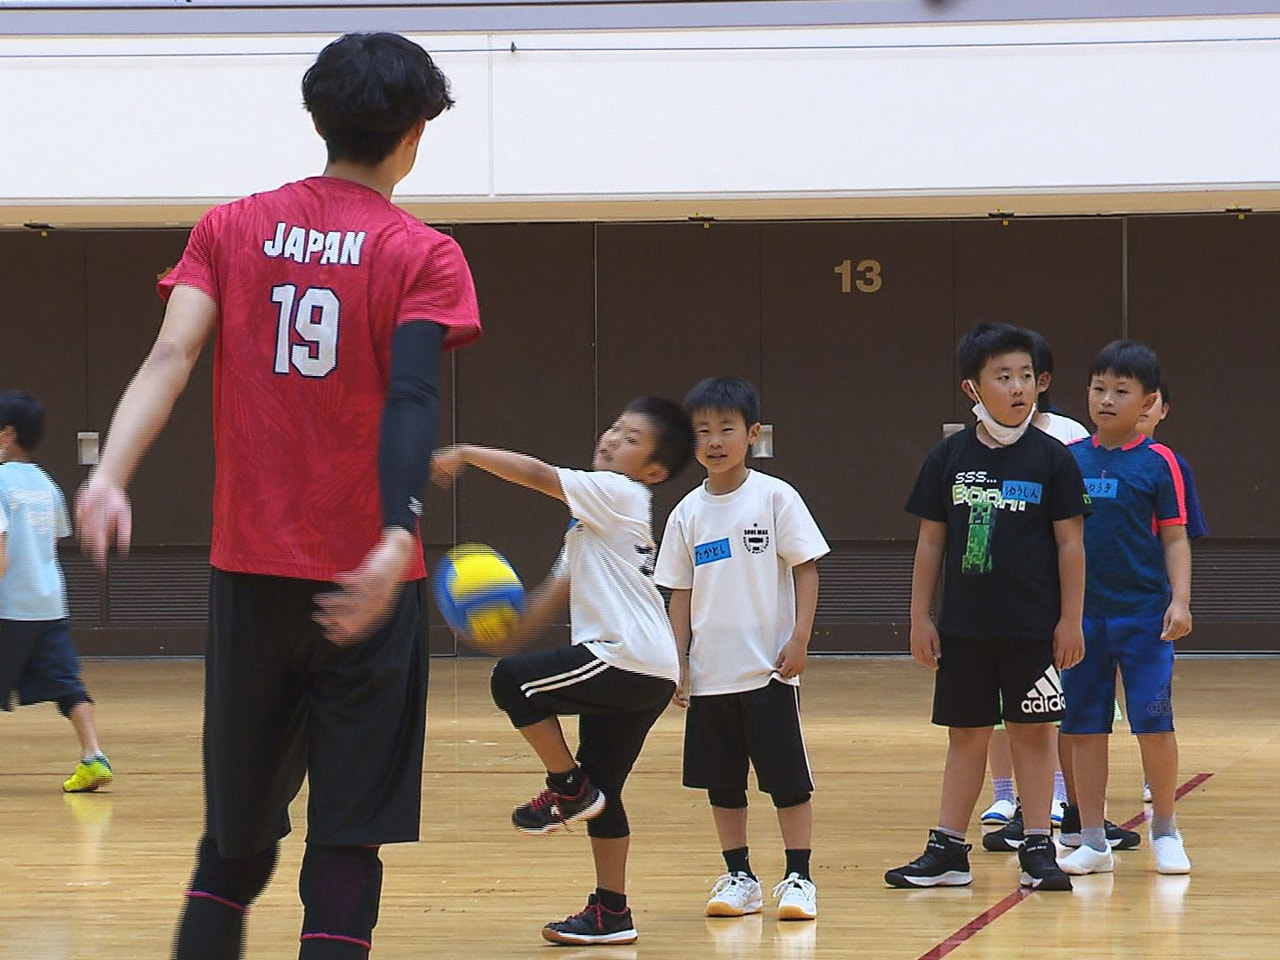 子どもたちにドッジボールの楽しさを伝えようと、日本代表選手らを講師に小学生を対象...